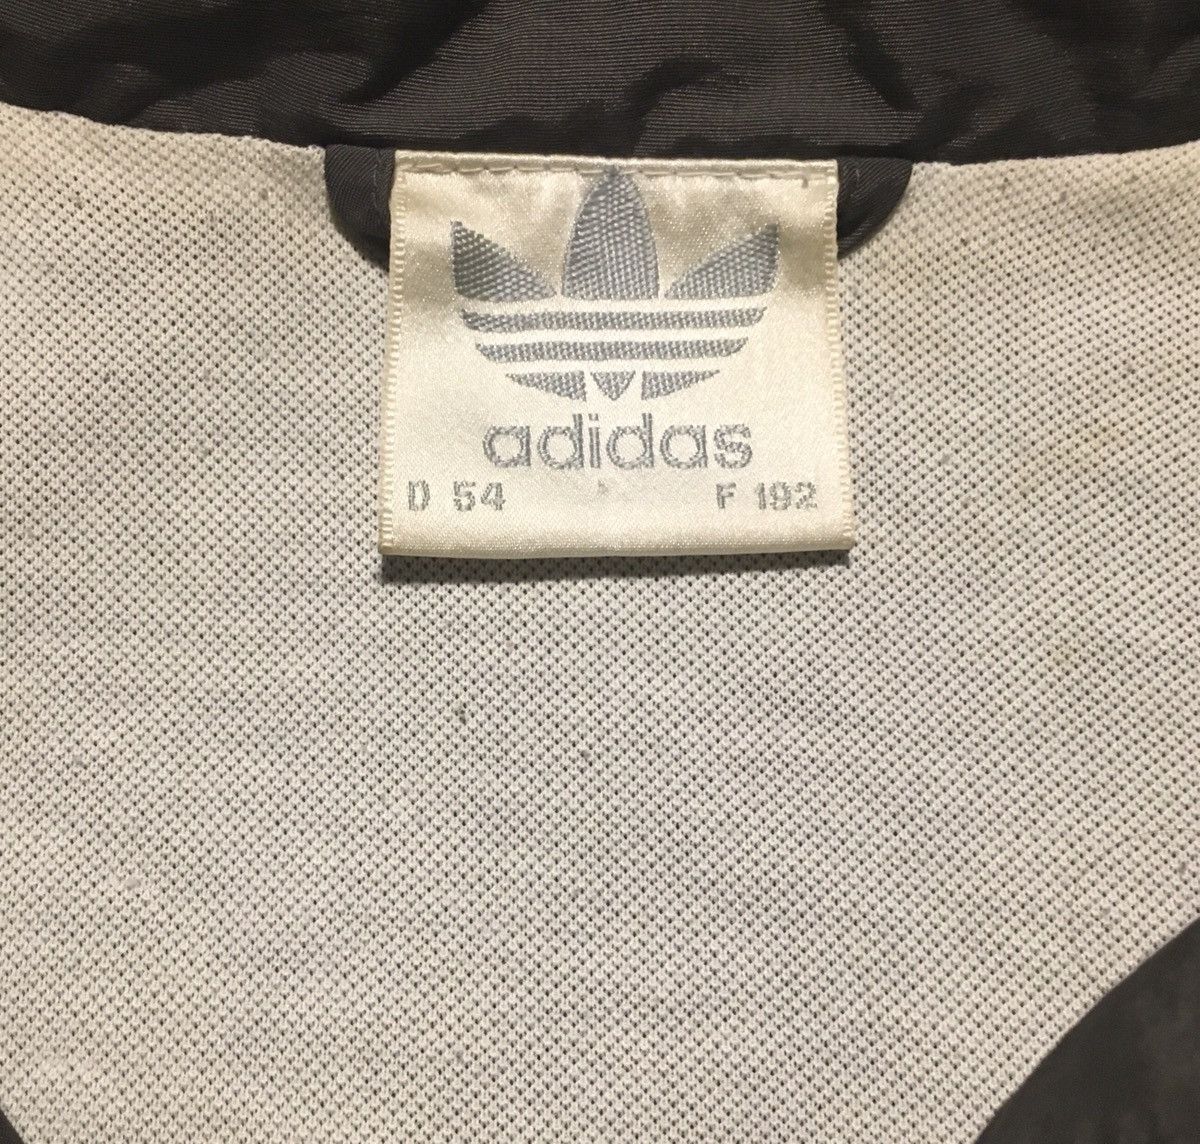 Adidas Vintage Adidas Tennis Jacket Size US L / EU 52-54 / 3 - 3 Thumbnail